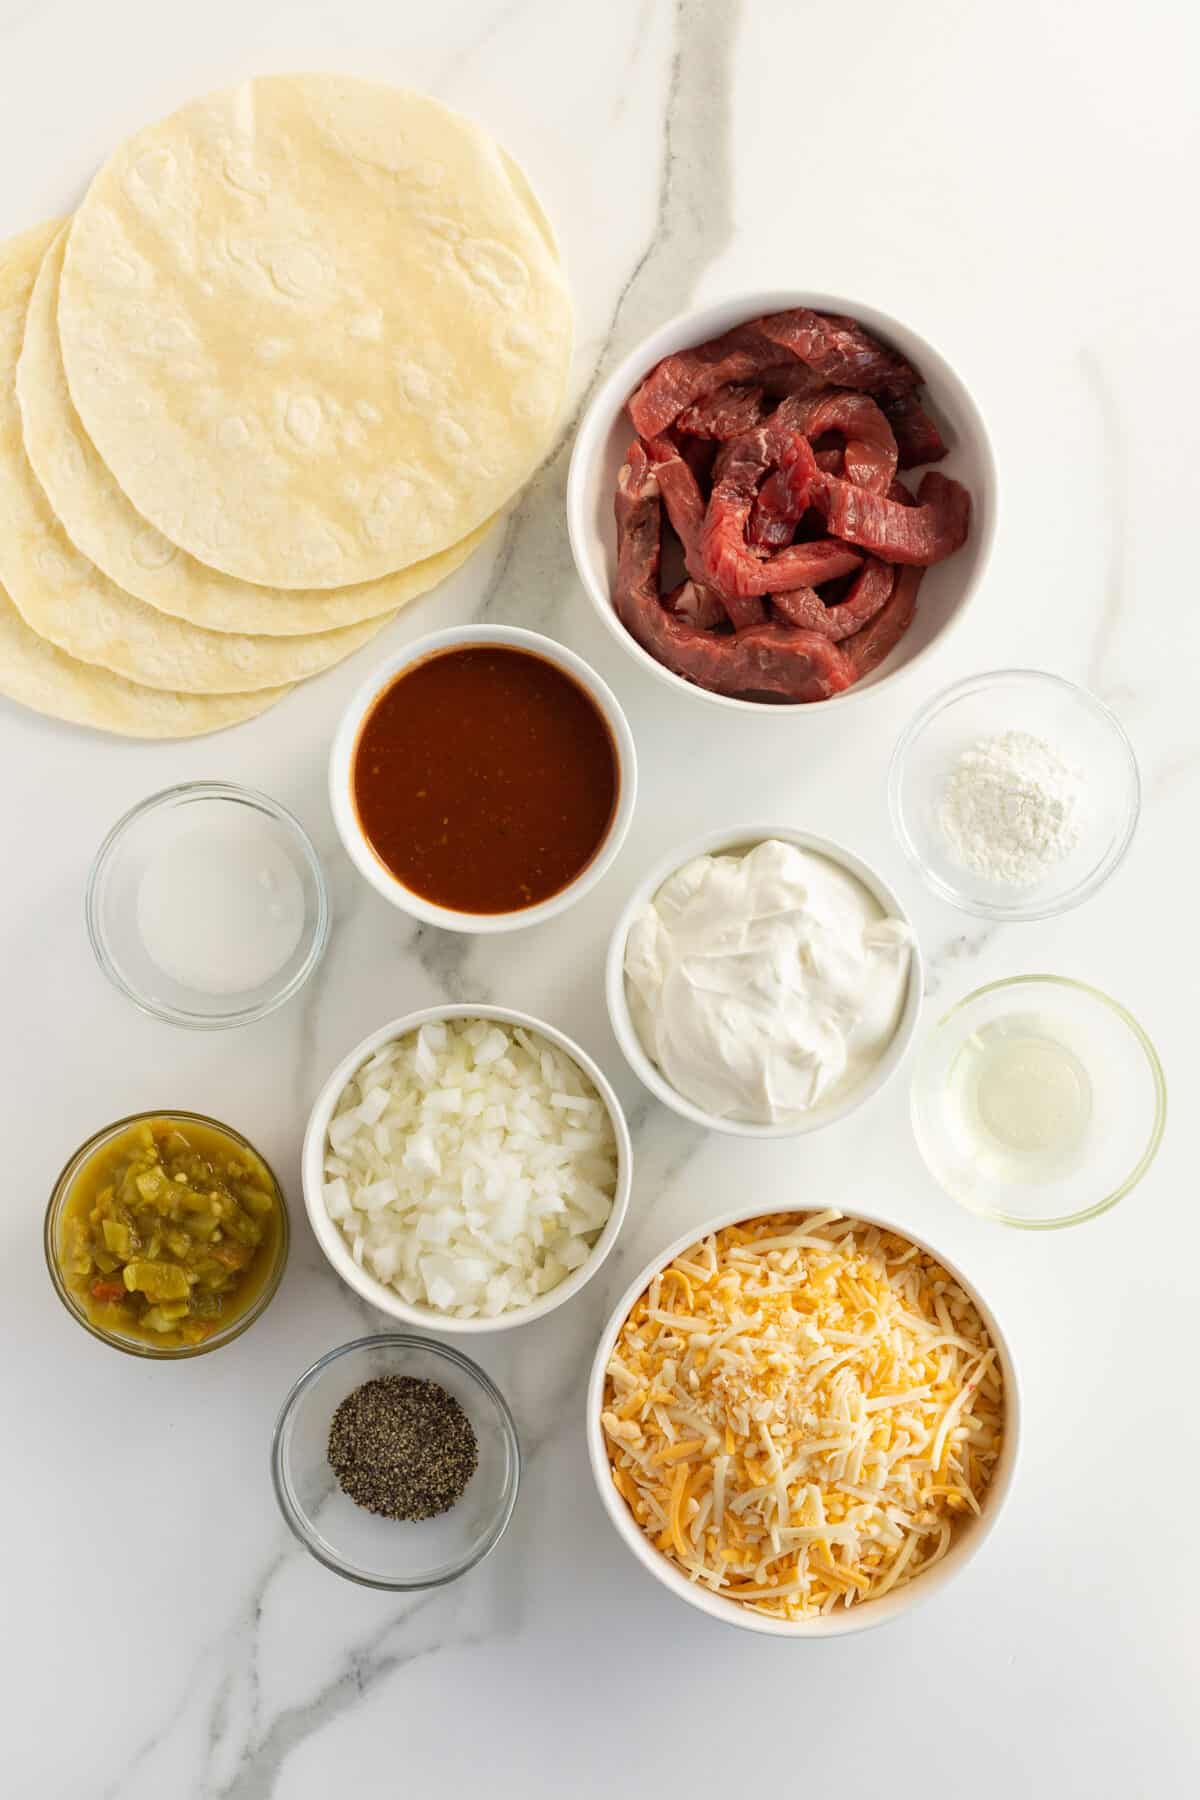 sour cream steak enchiladas ingredients in small white bowls
